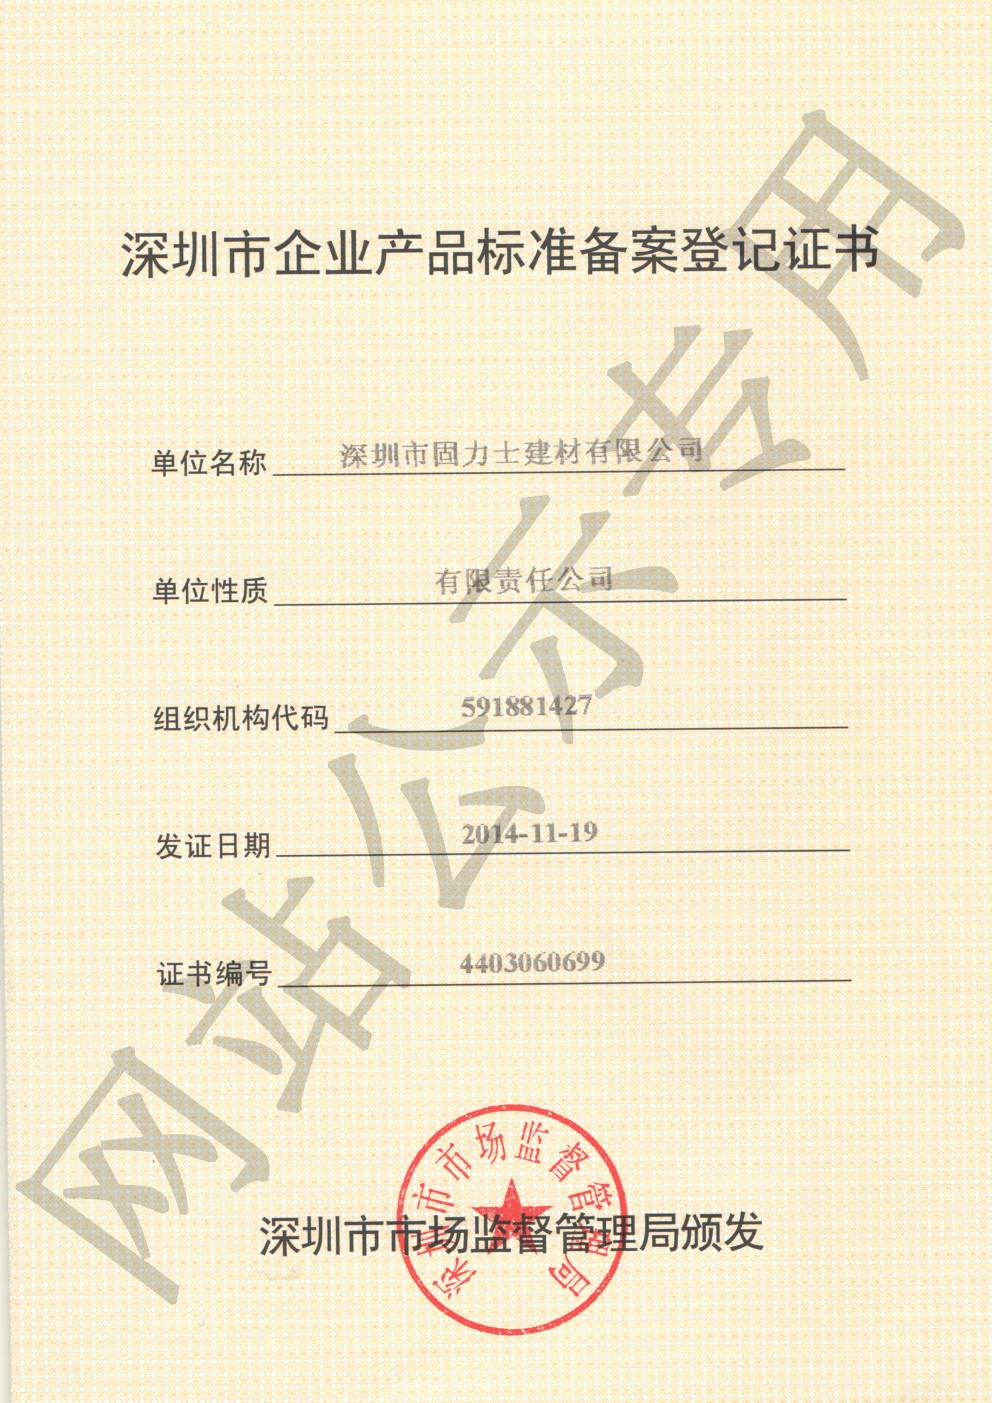 阿拉善右企业产品标准登记证书